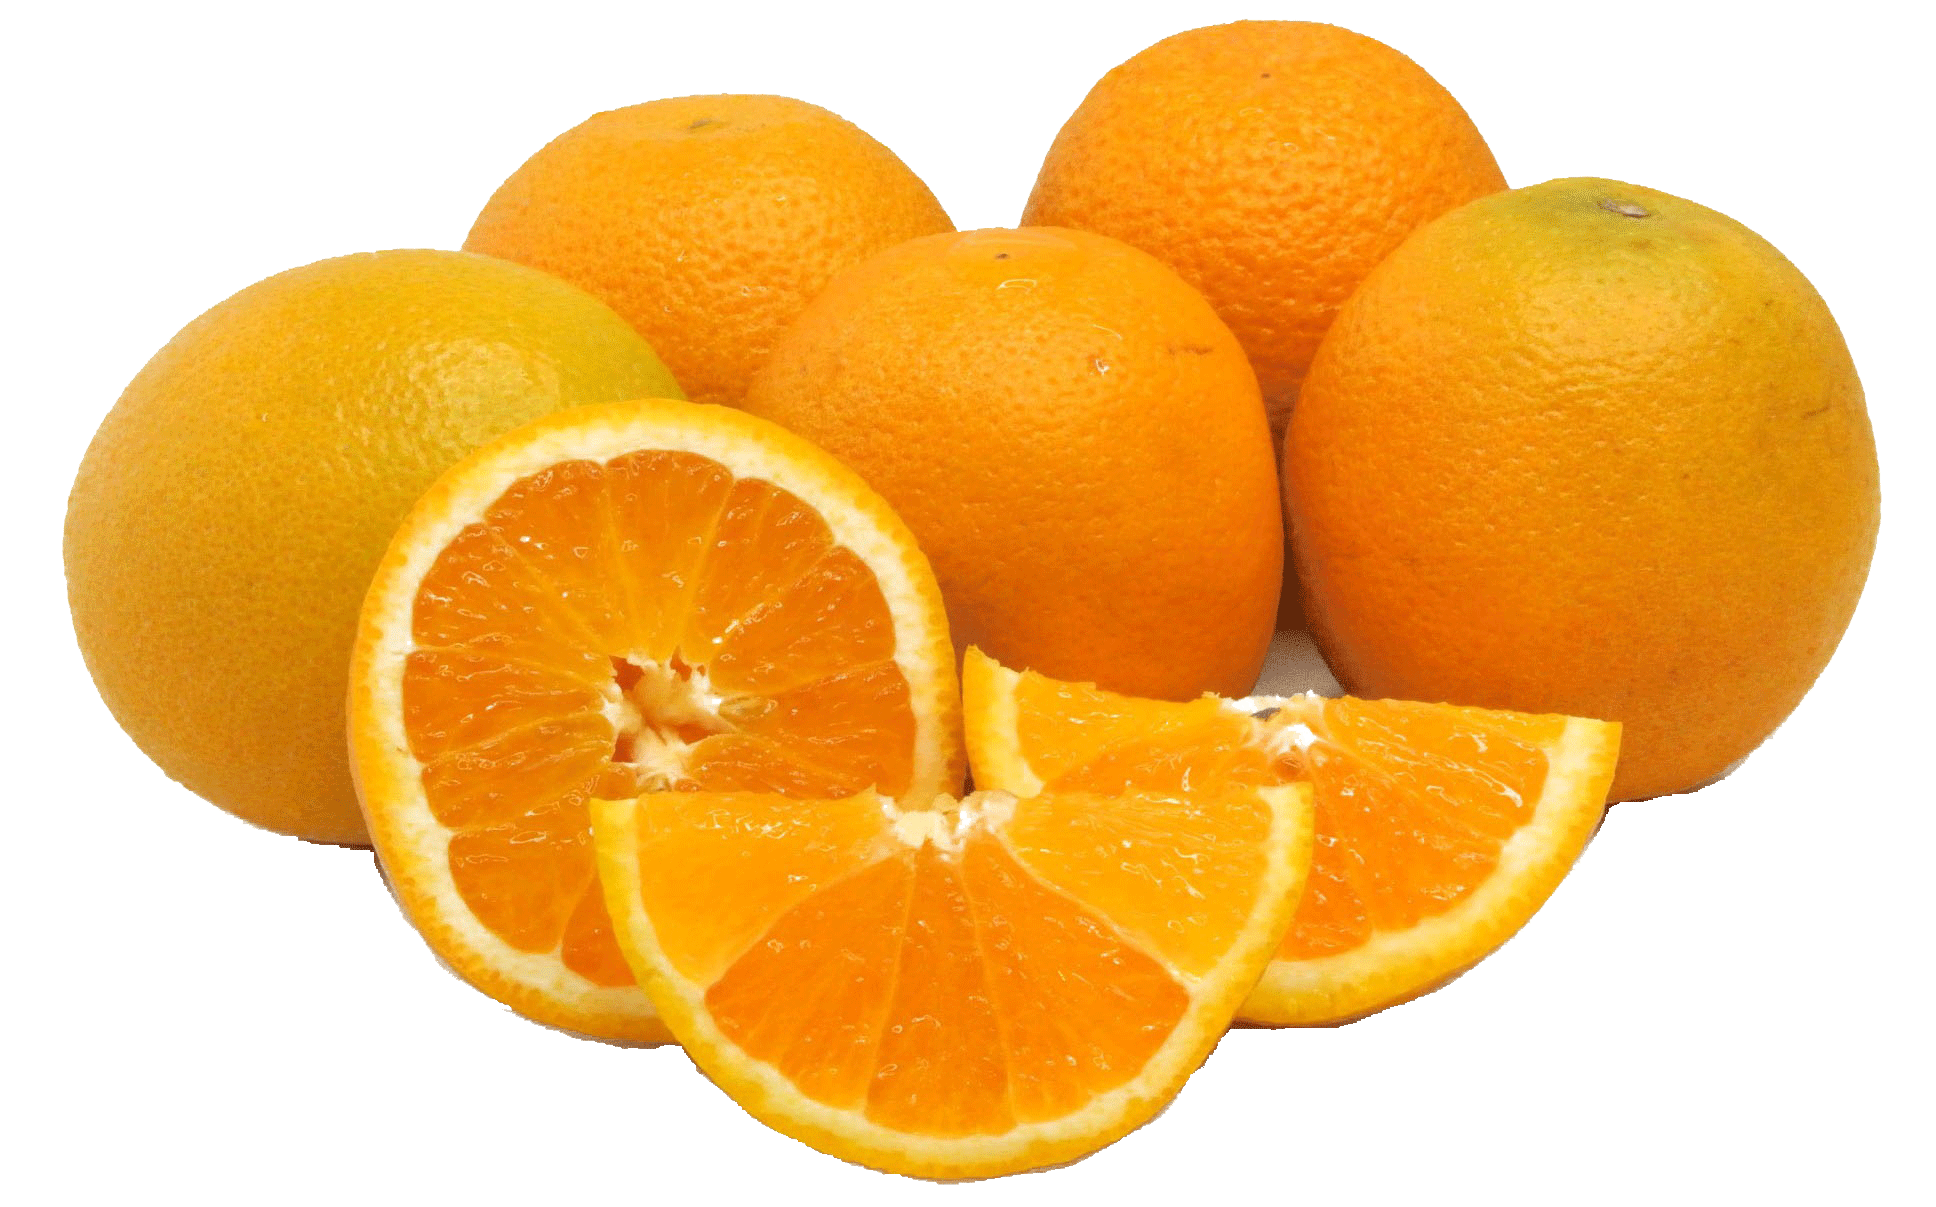 What Are Valencia Oranges?